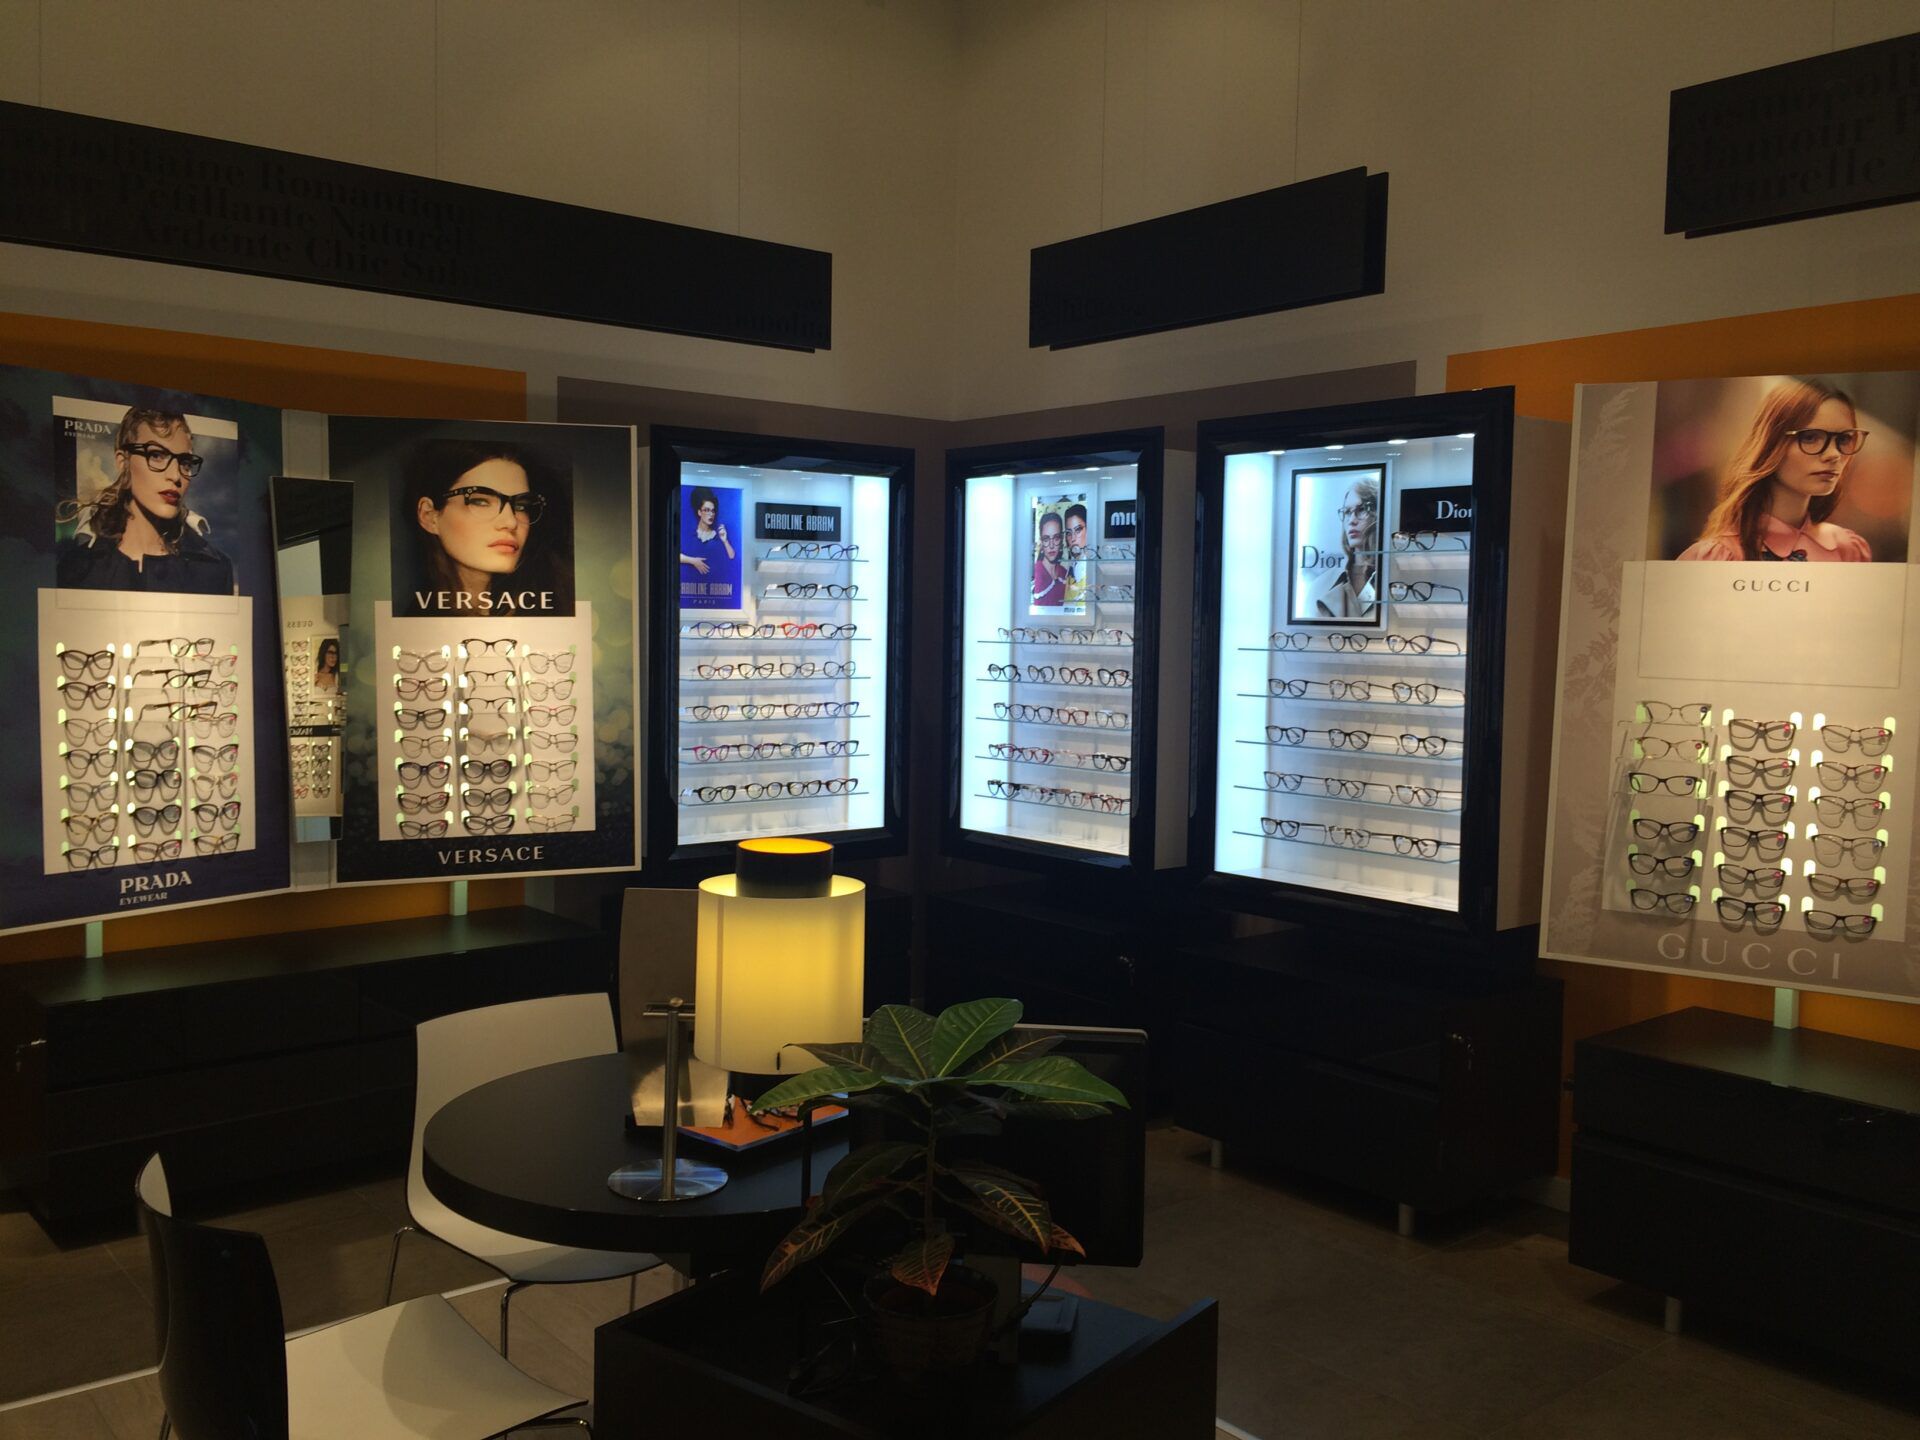 Na zdjęciu widać kolekcję okularów korekcyjnych znajdująca się w salonie optycznym Lynx Optique Bronowice.